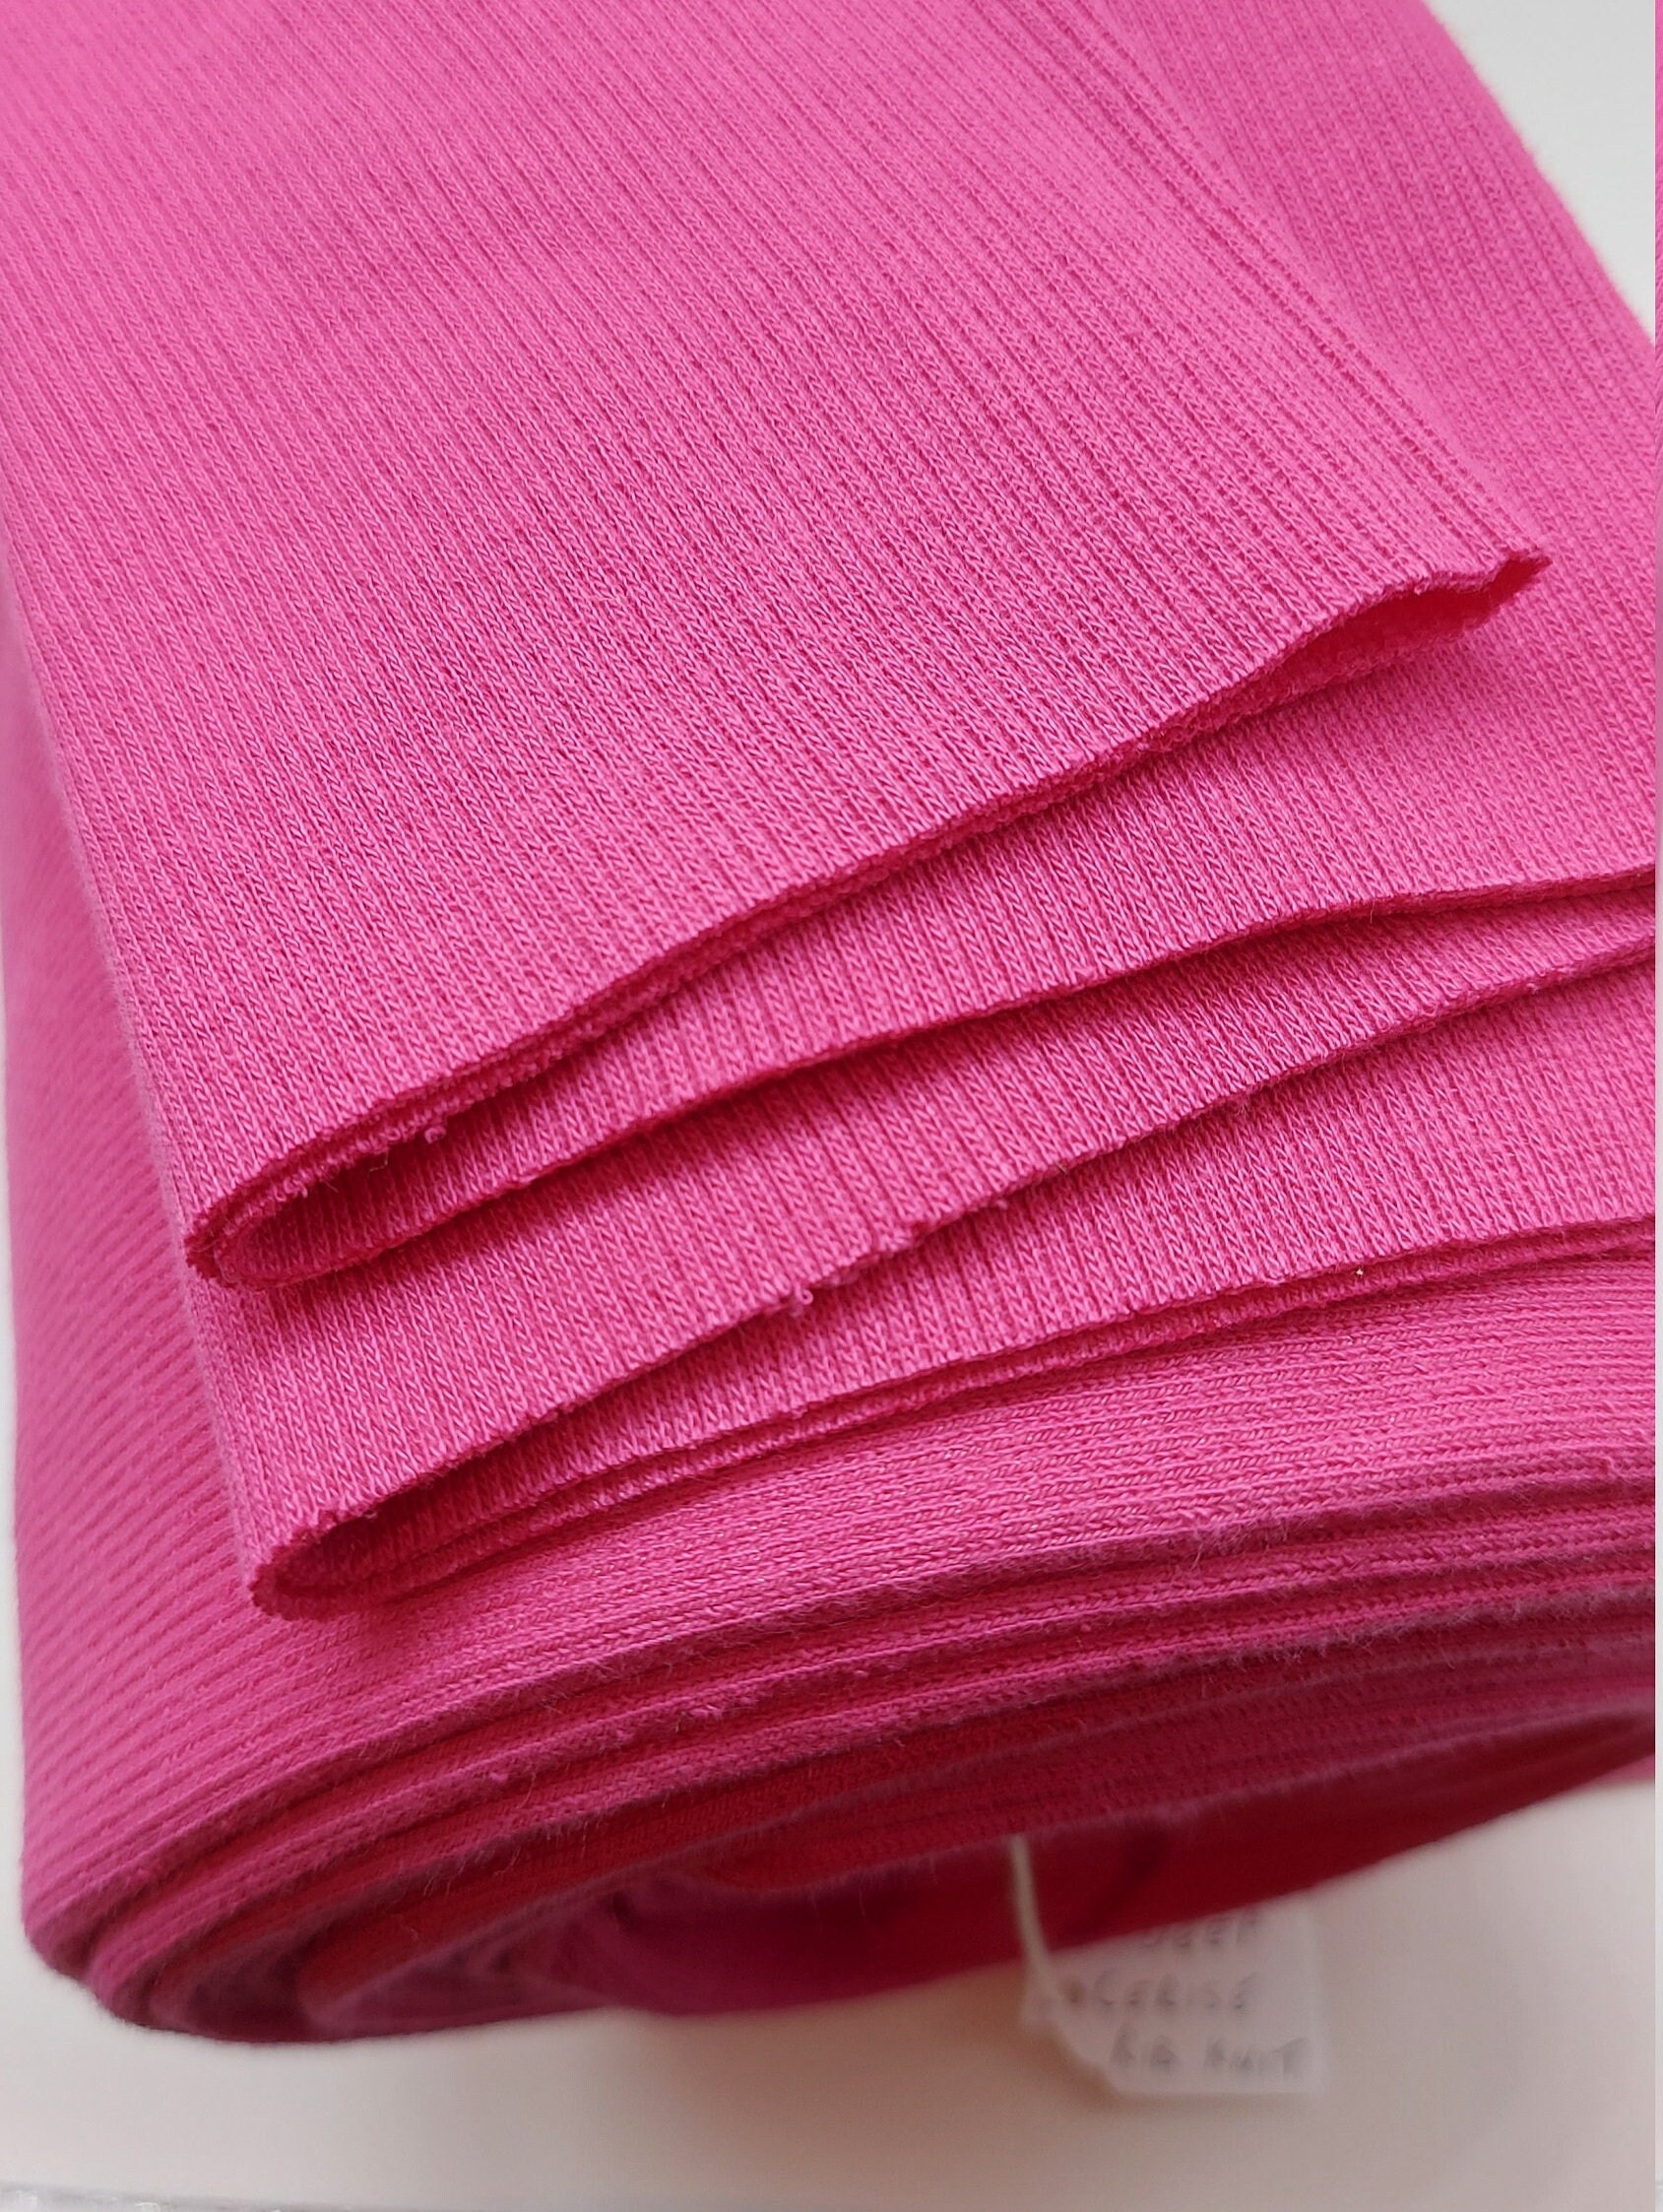 97%Cotton 3%Spandex Elastane Rib Crocheting Fabric for Garment